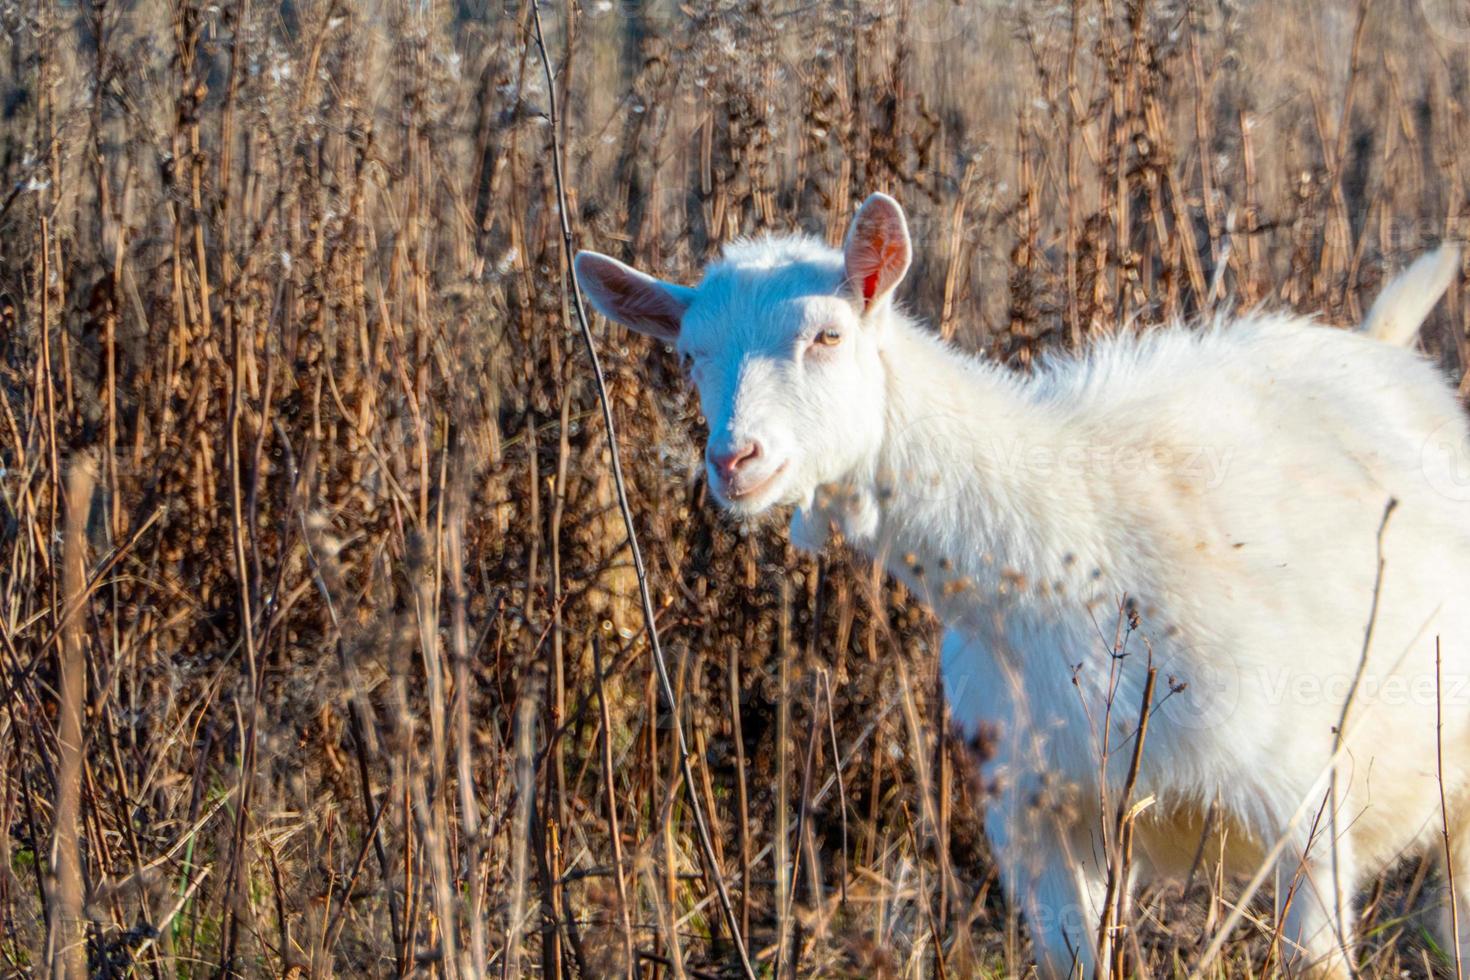 cabra comiendo hierba marchita, ganado en un pasto. cabra blanca ganado en una granja del pueblo. ganado en una granja del pueblo. foto